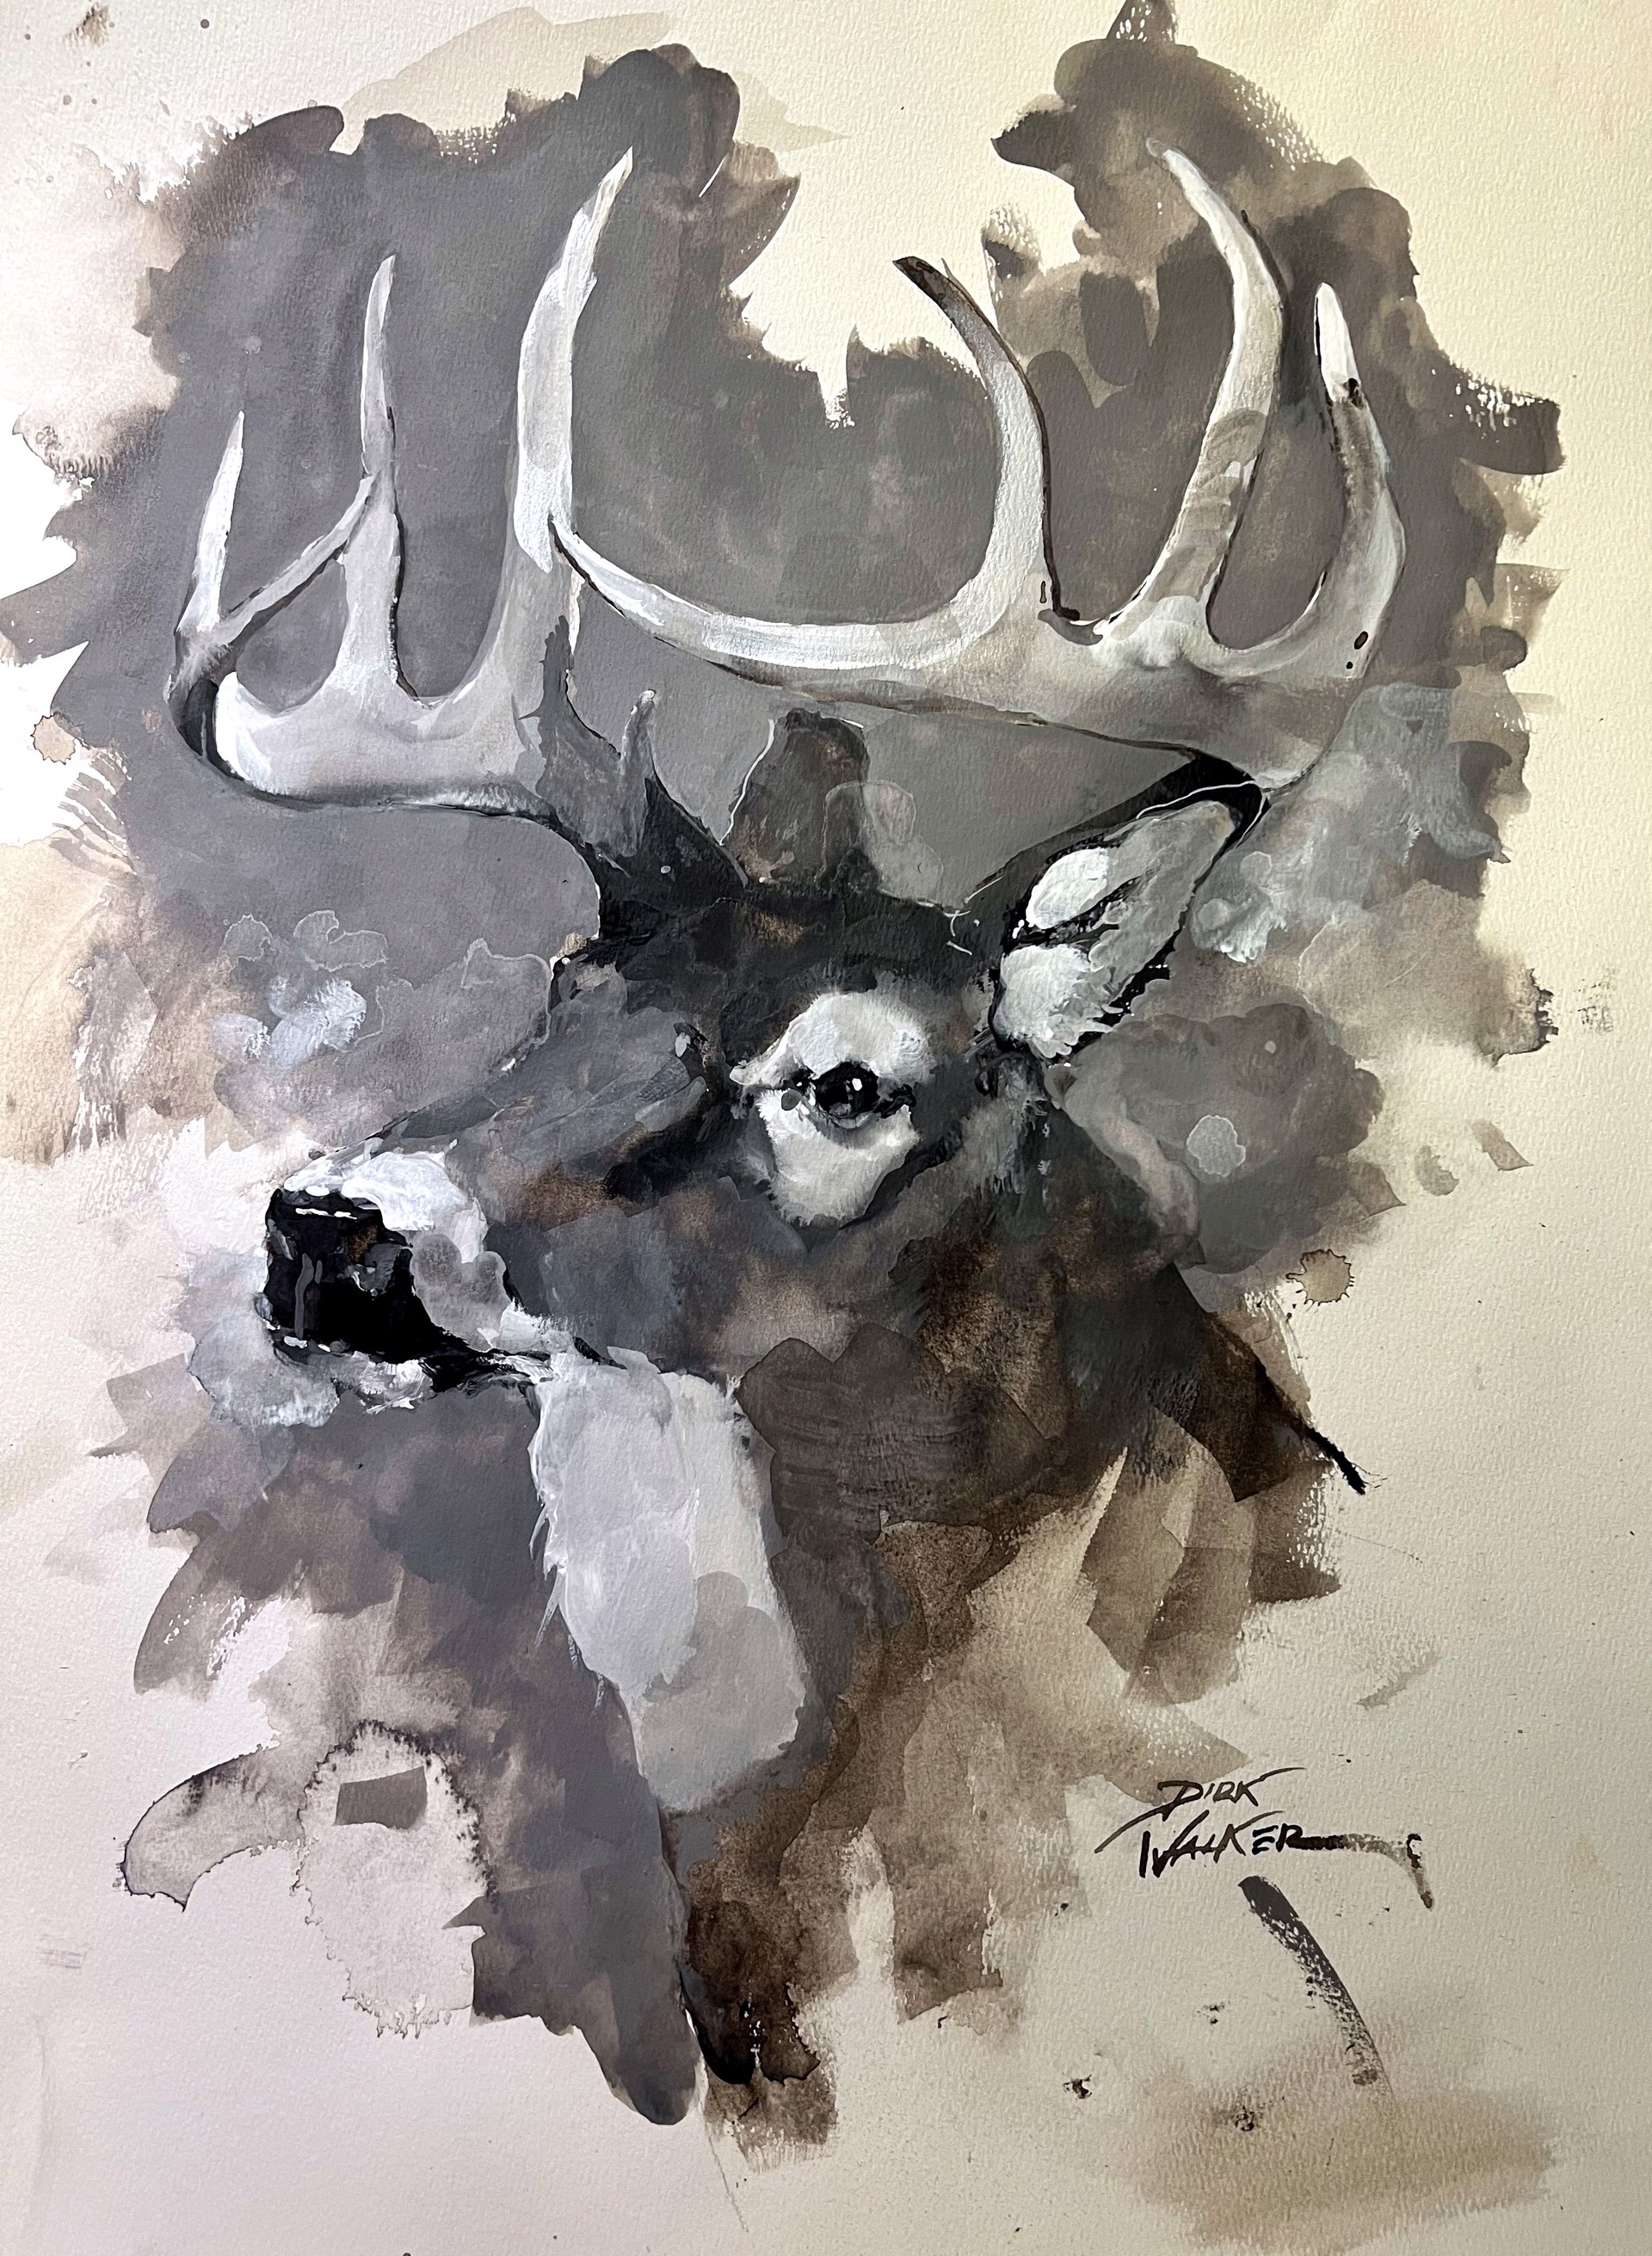 Whitetail Deer by Dirk Walker